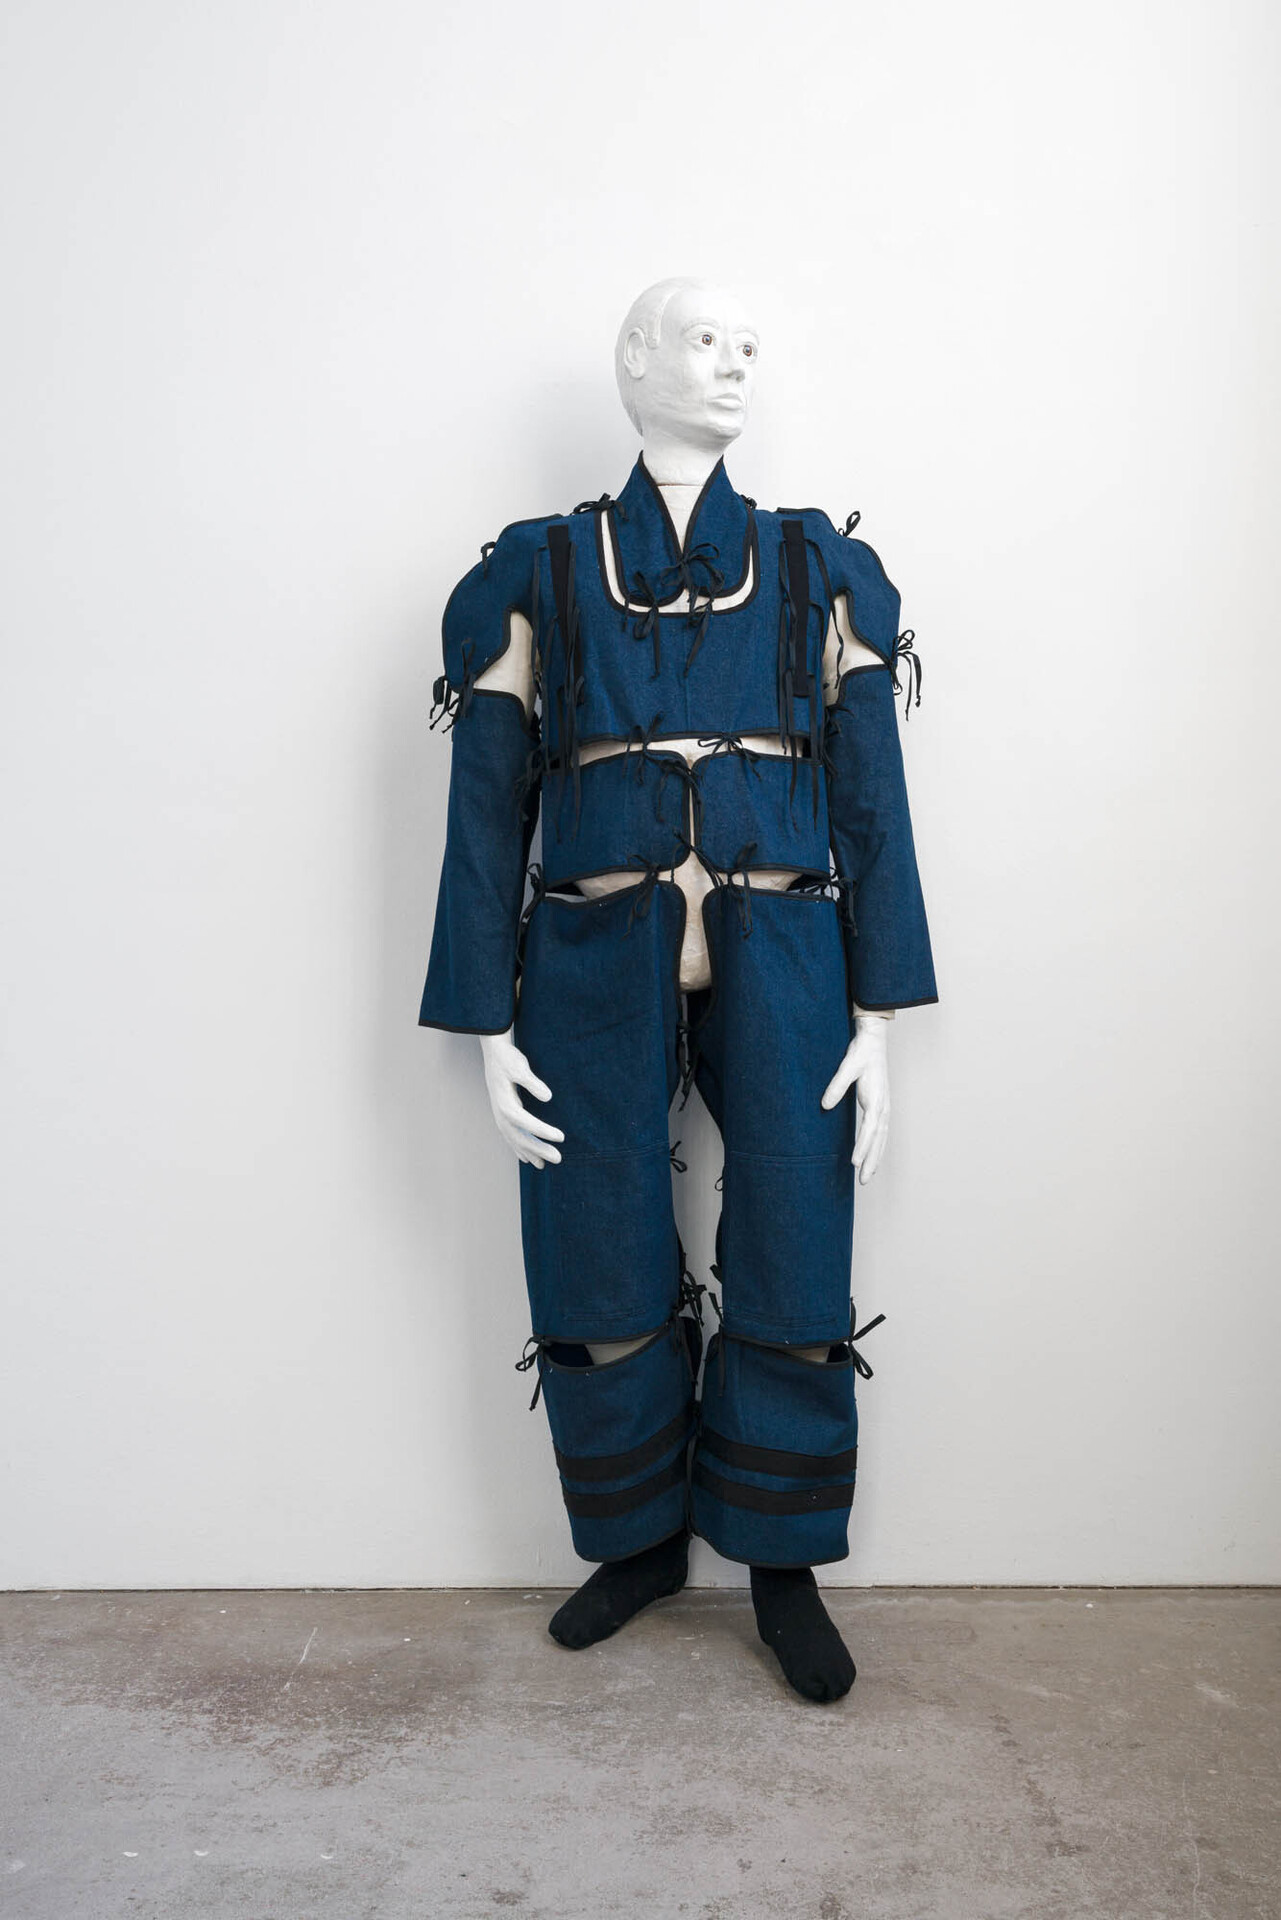 Stefan Fuchs, 'A member', 2021, Fabric, mannequin, mixed materials, 175 × 35 × 60 cm